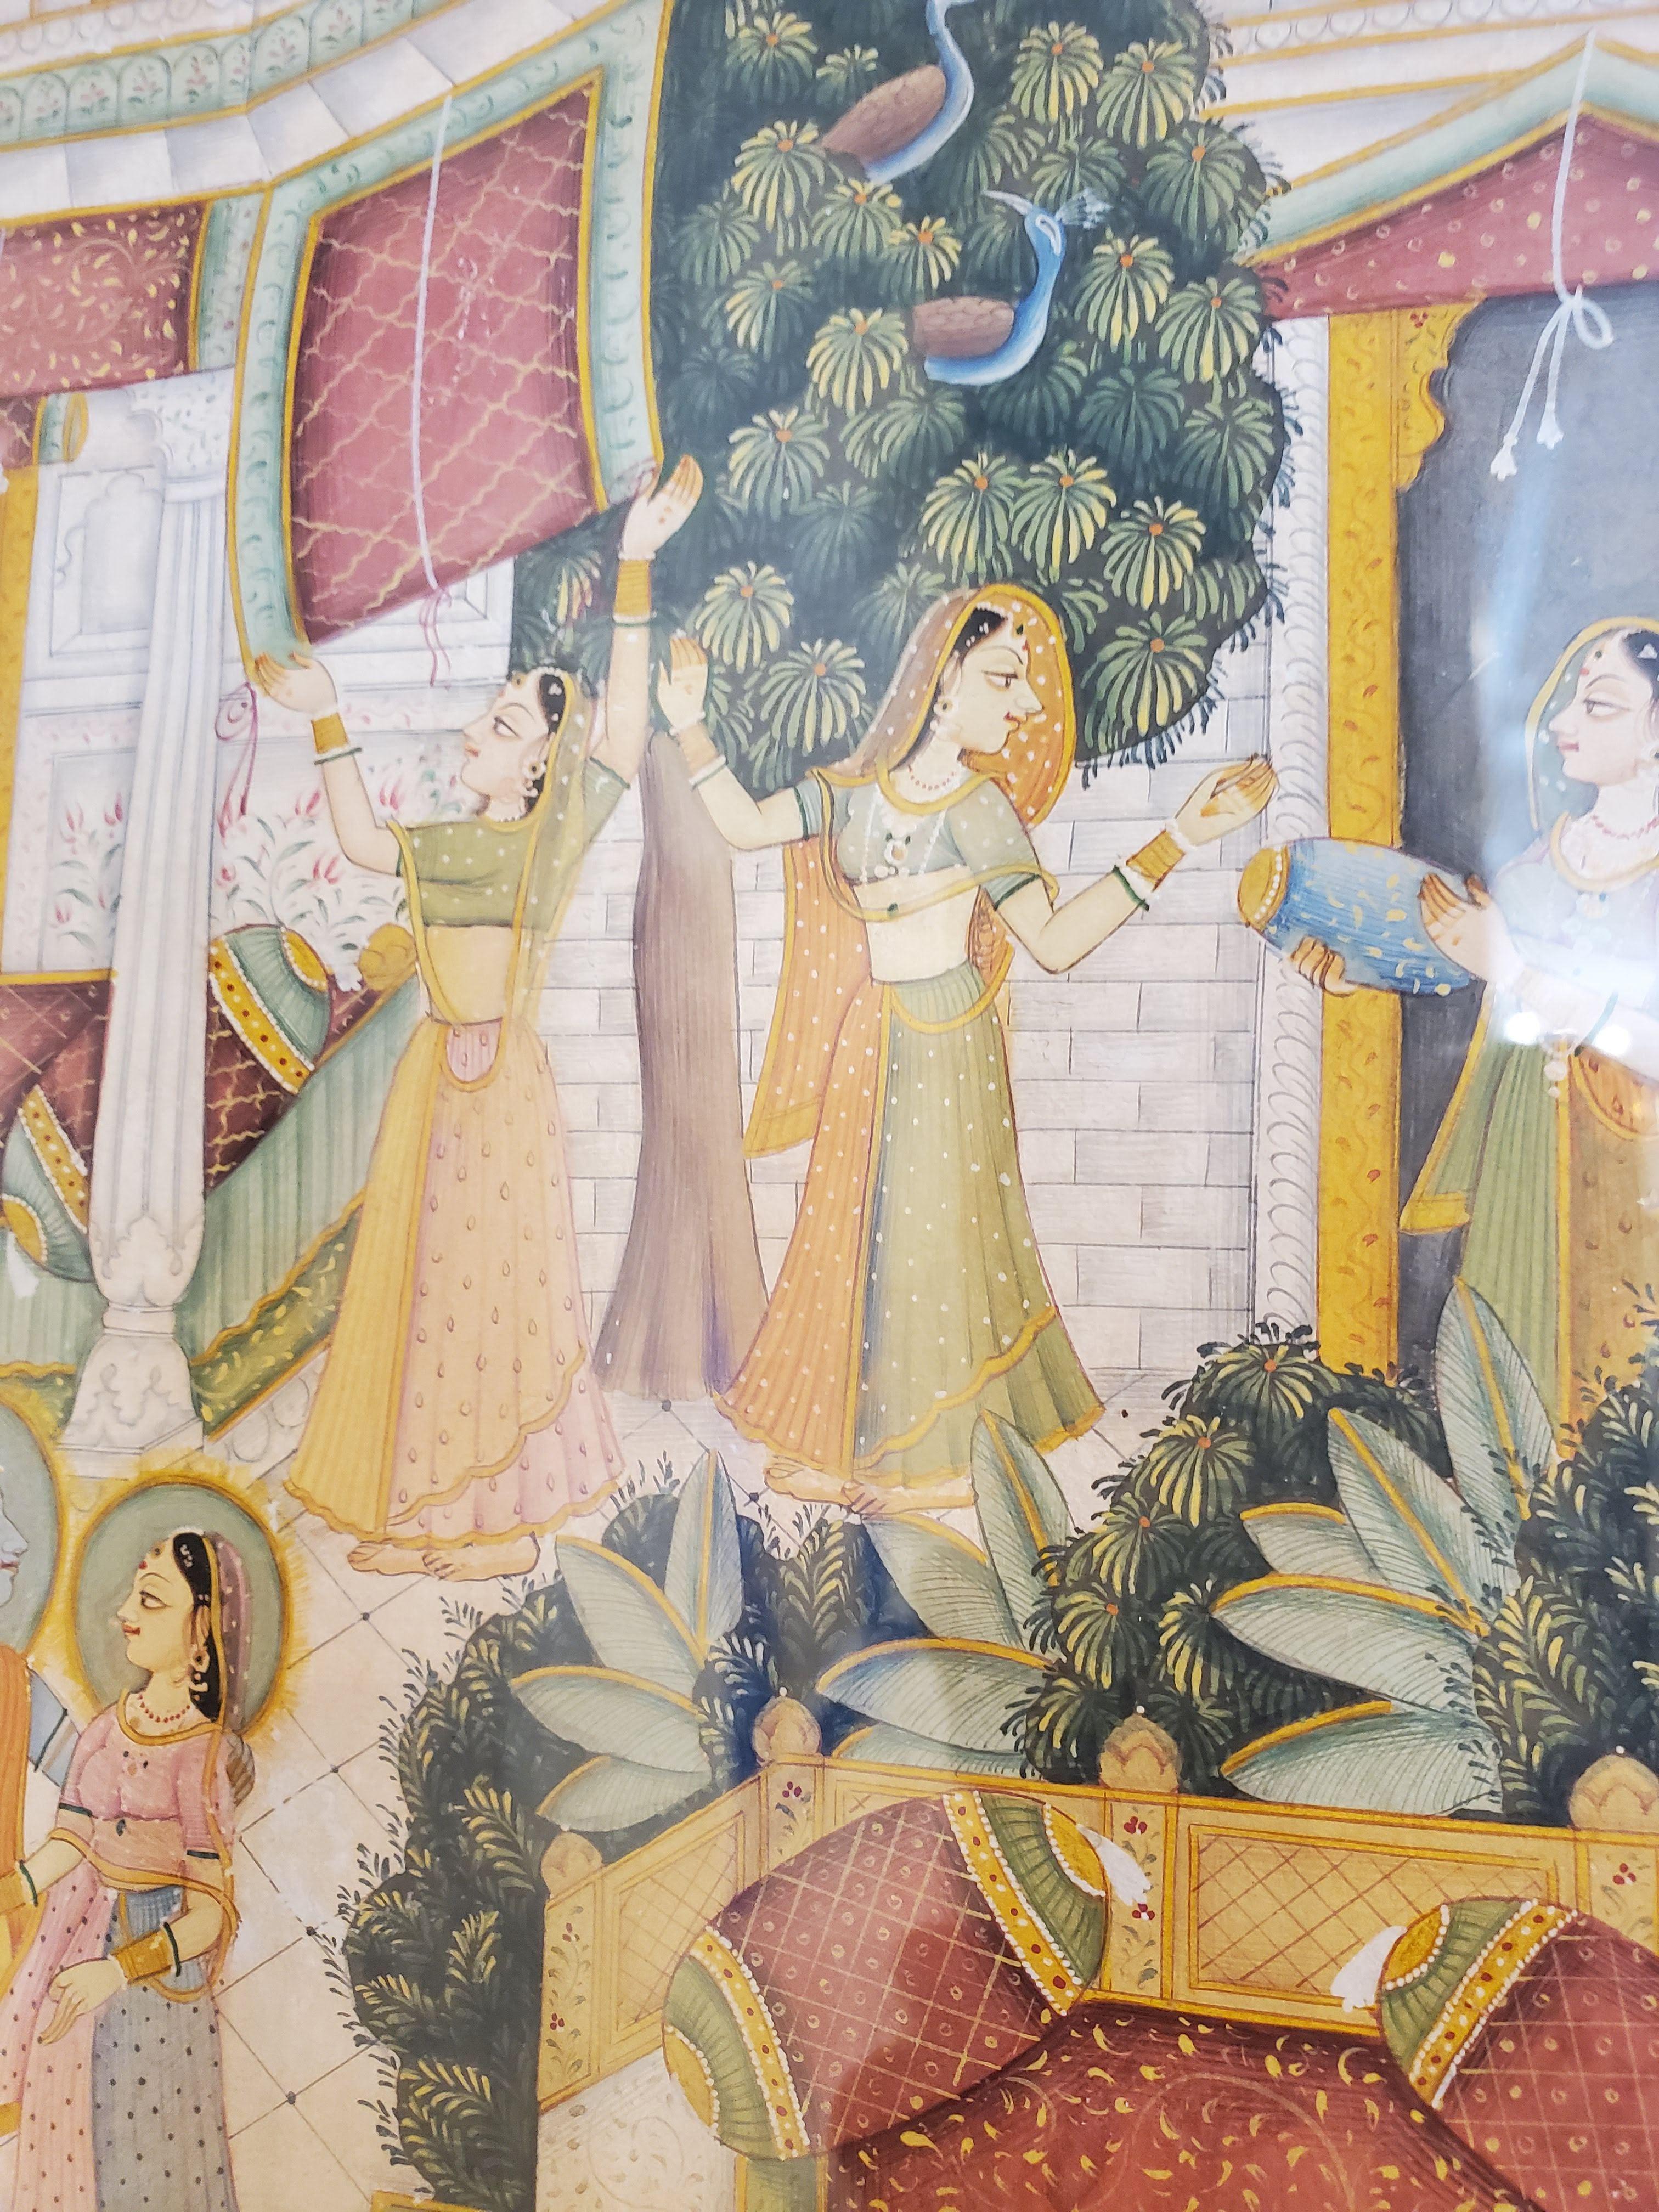 Fein ausgeführte indische Hofmalerei des 18. Jahrhunderts. Mit Gold gehöhte Gouache auf Papier. Krishna mit Radha und anderen Gopis in einer Palastumgebung. Exquisite Details. Eingerahmt in ein passendes dunkelbraunes Leinenpassepartout und einen